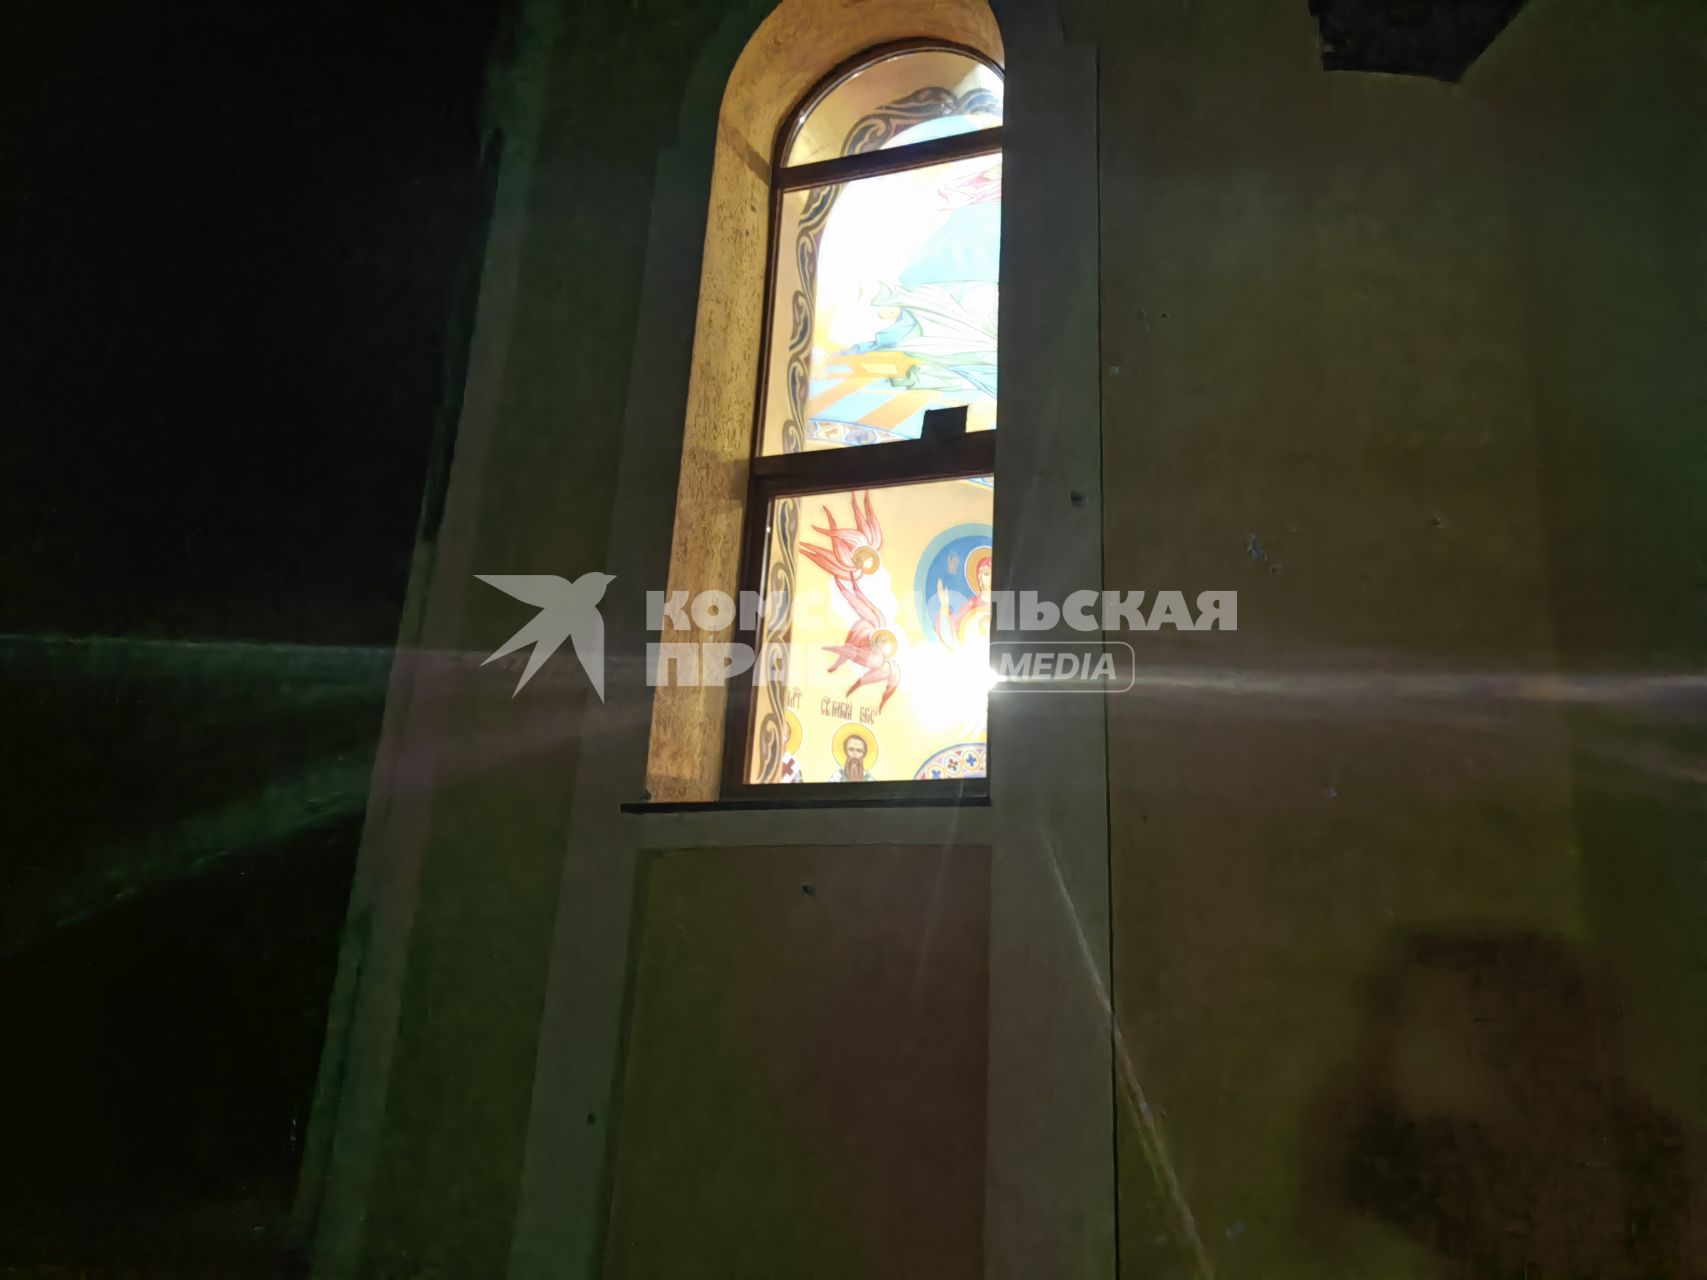 Пасхальное богослужение в прифронтовом храме Донецка